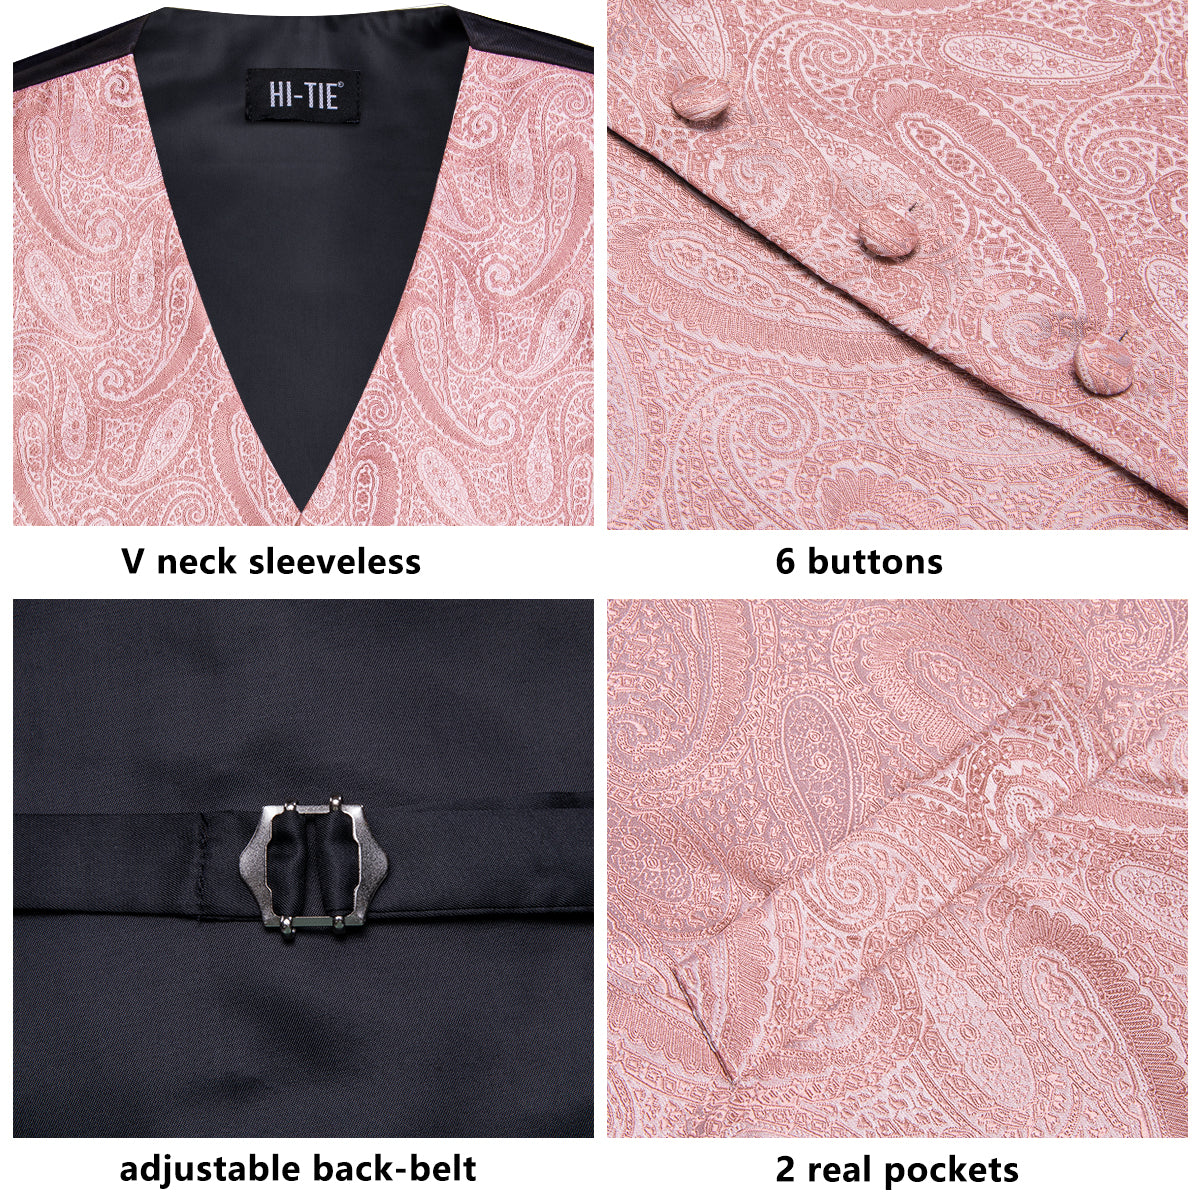 Pink Paisley Silk Men's Vest Hanky Cufflinks Tie Set